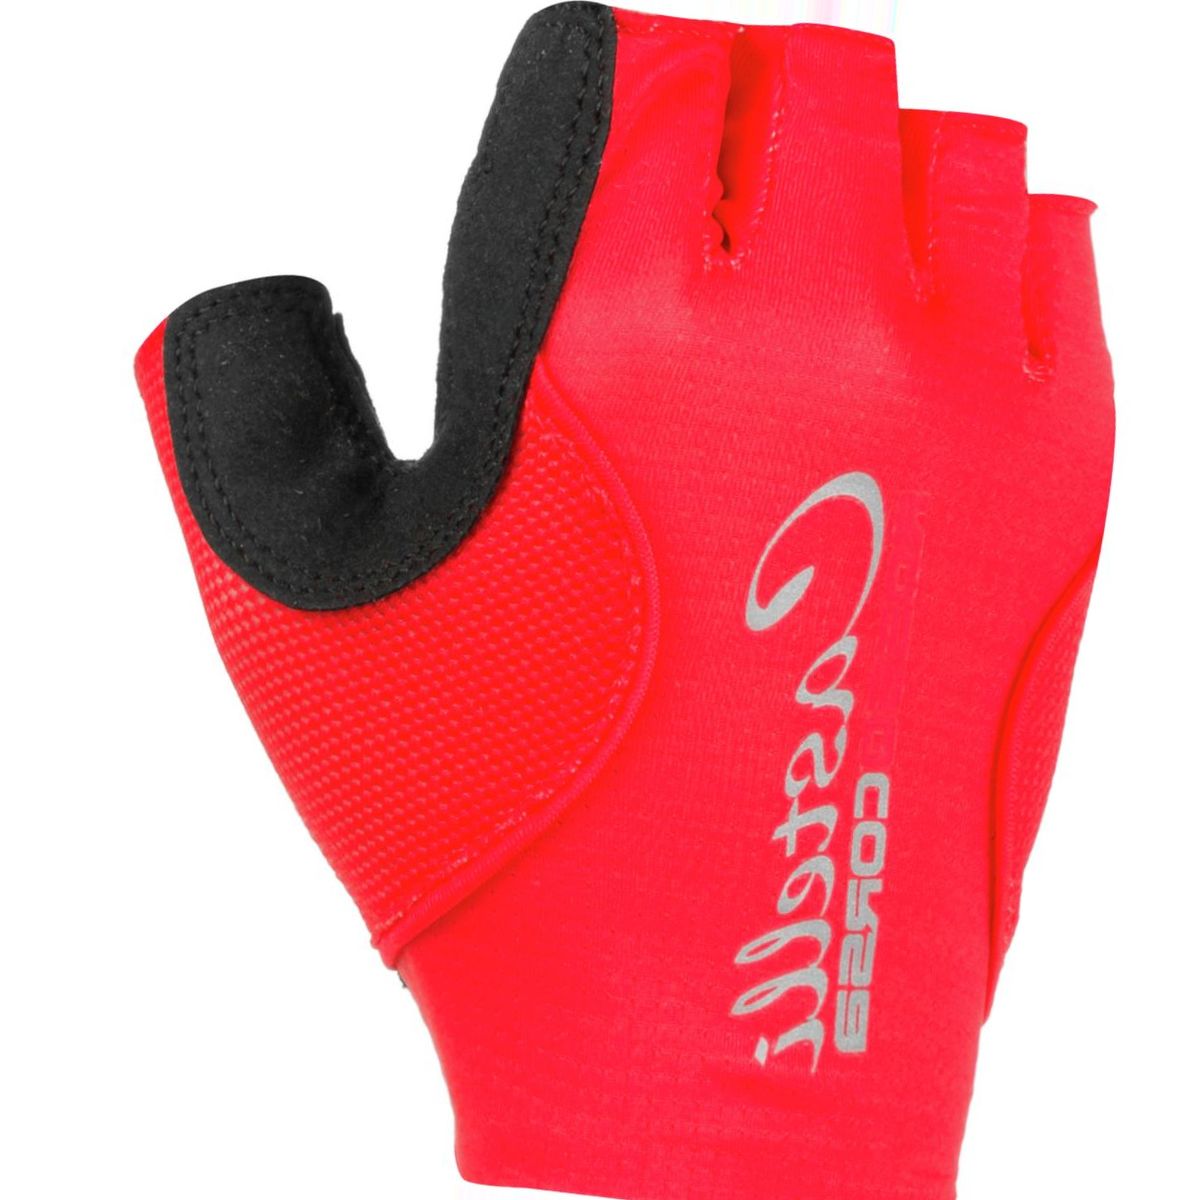 Castelli Rosso Corsa Pave Glove - Women's